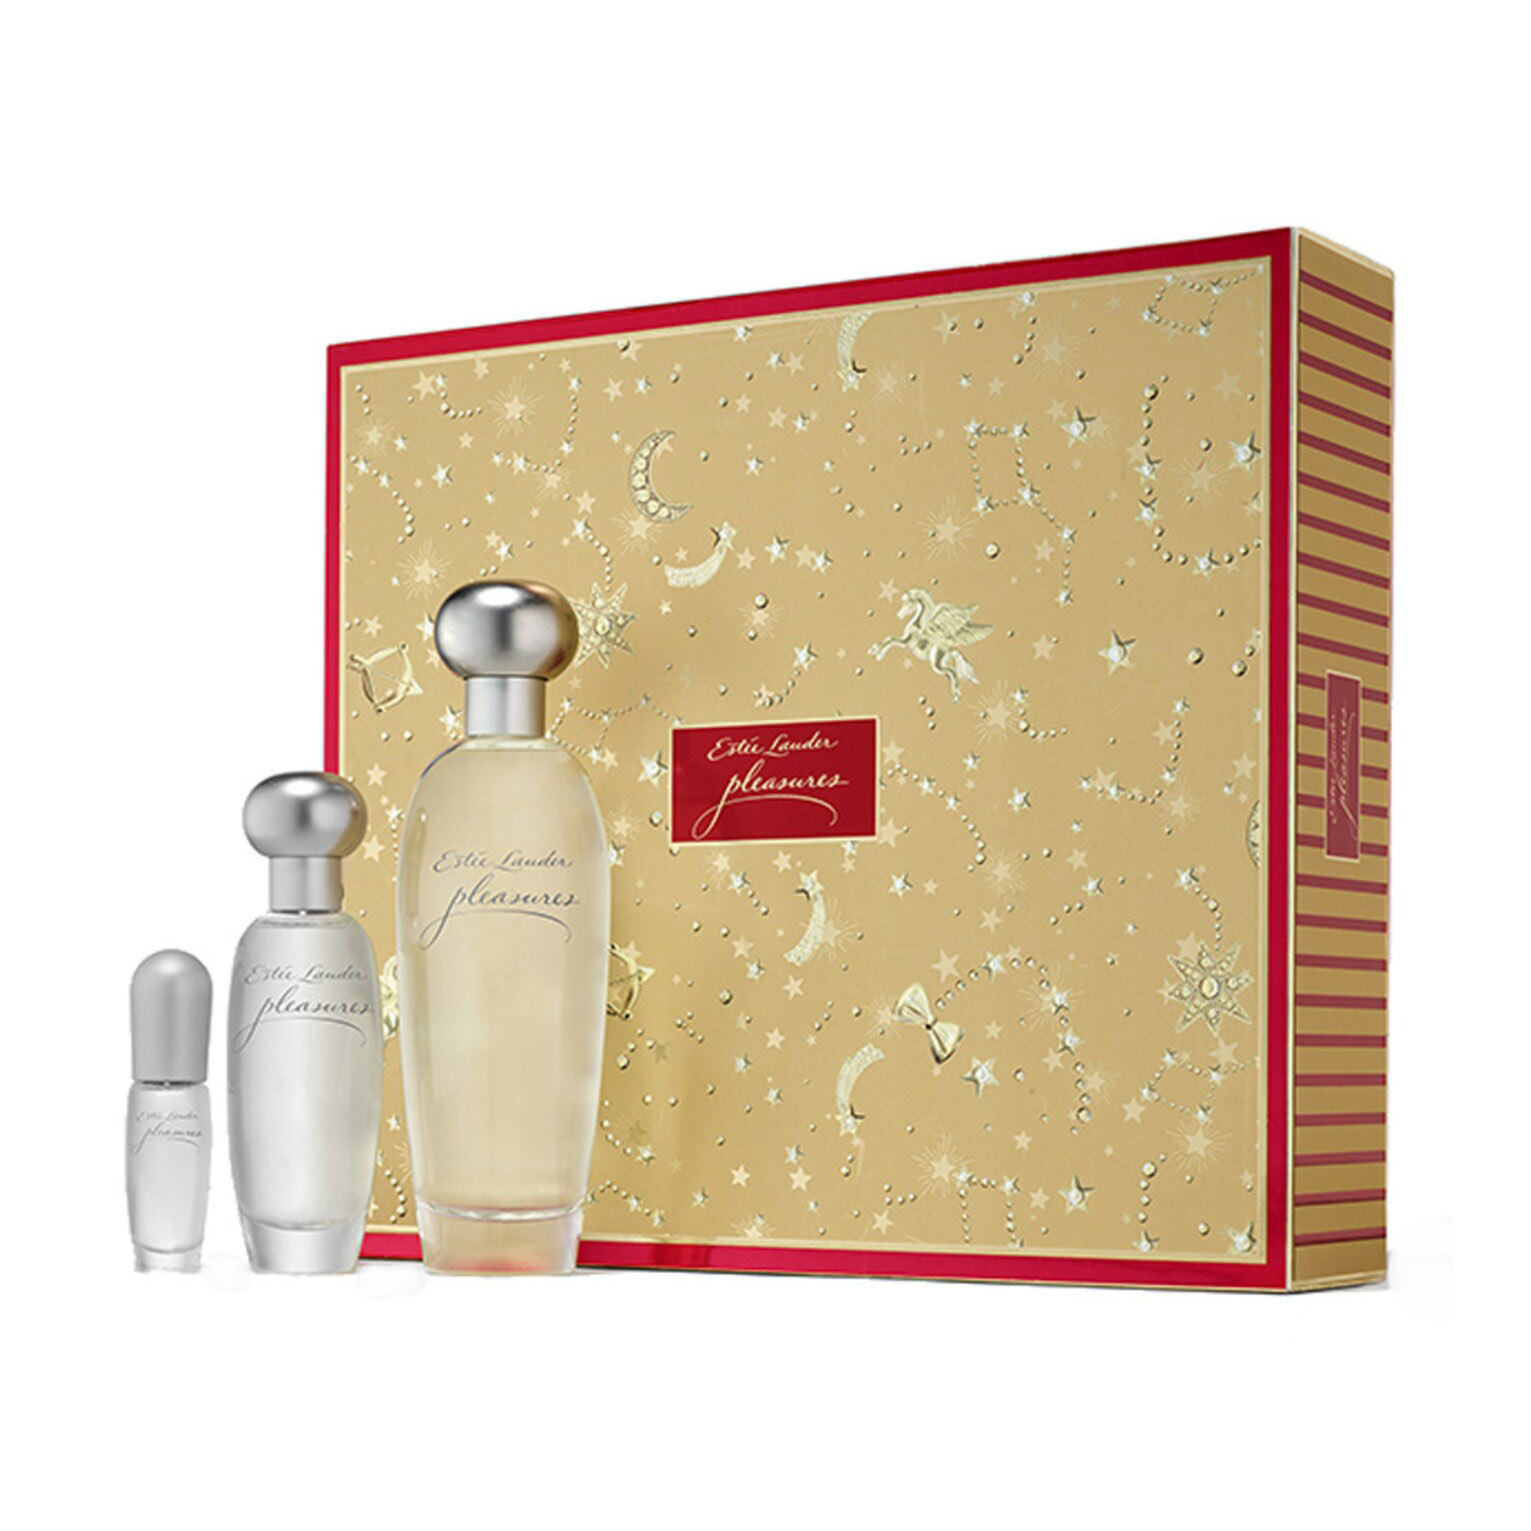 Подарочный парфюмерный набор Estee Lauder Pleasures Deluxe Trio Fragancias, 3 предмета цена и фото